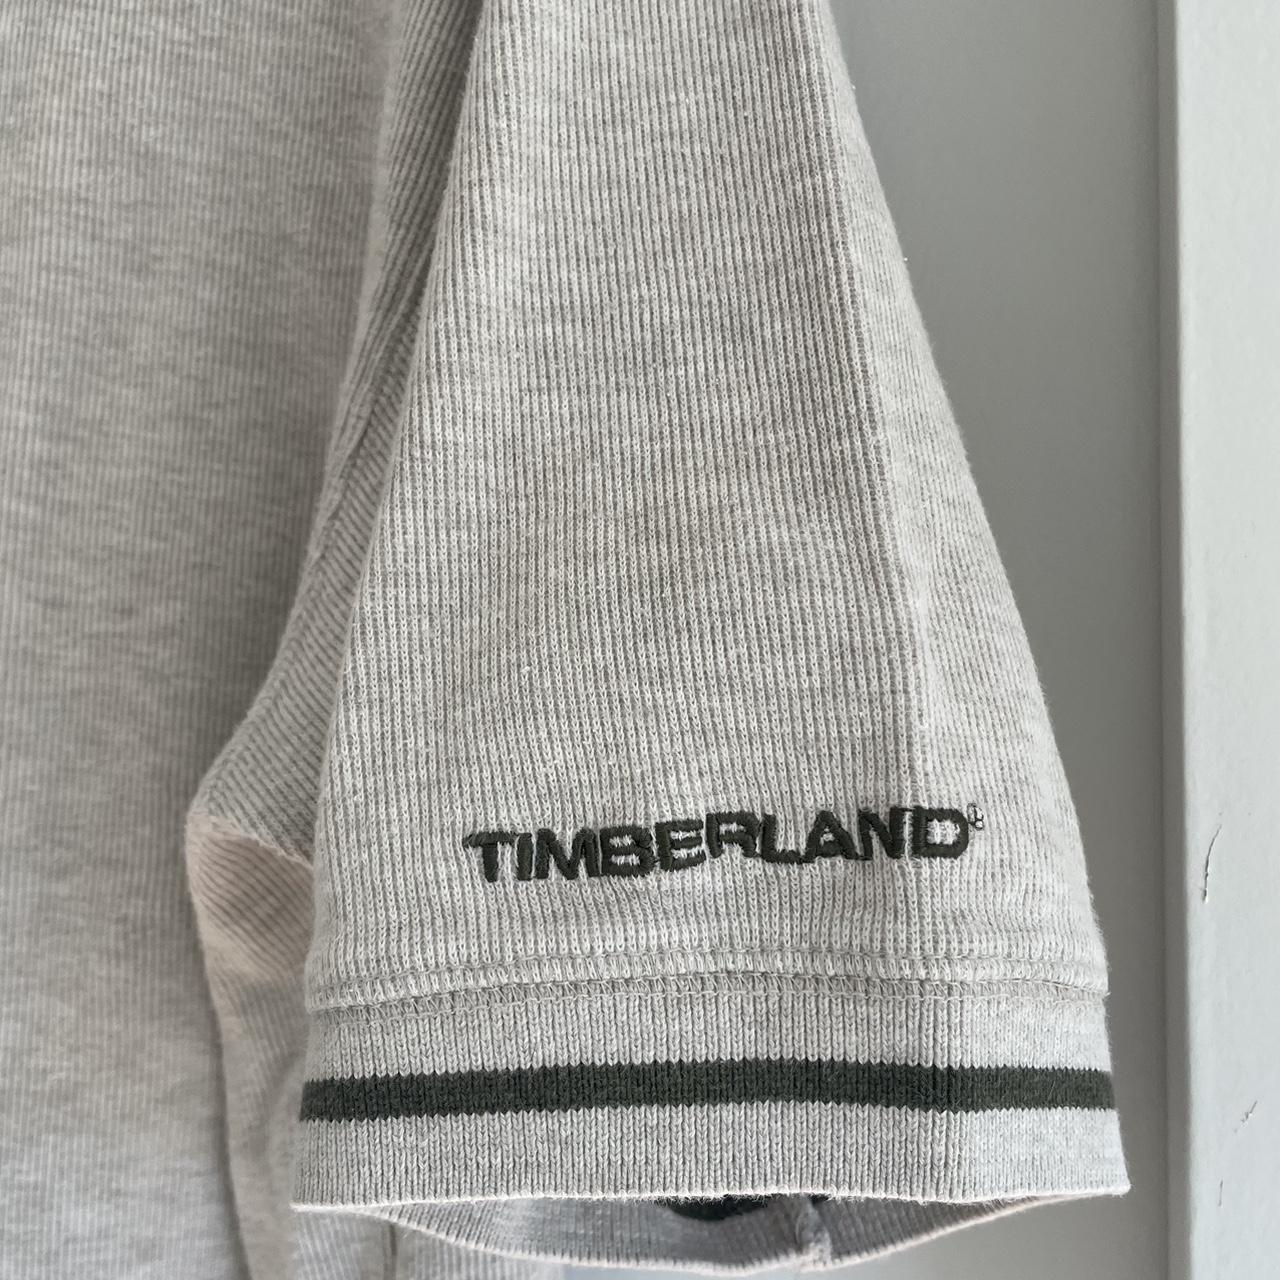 Timberland Men's Cream and White T-shirt (2)